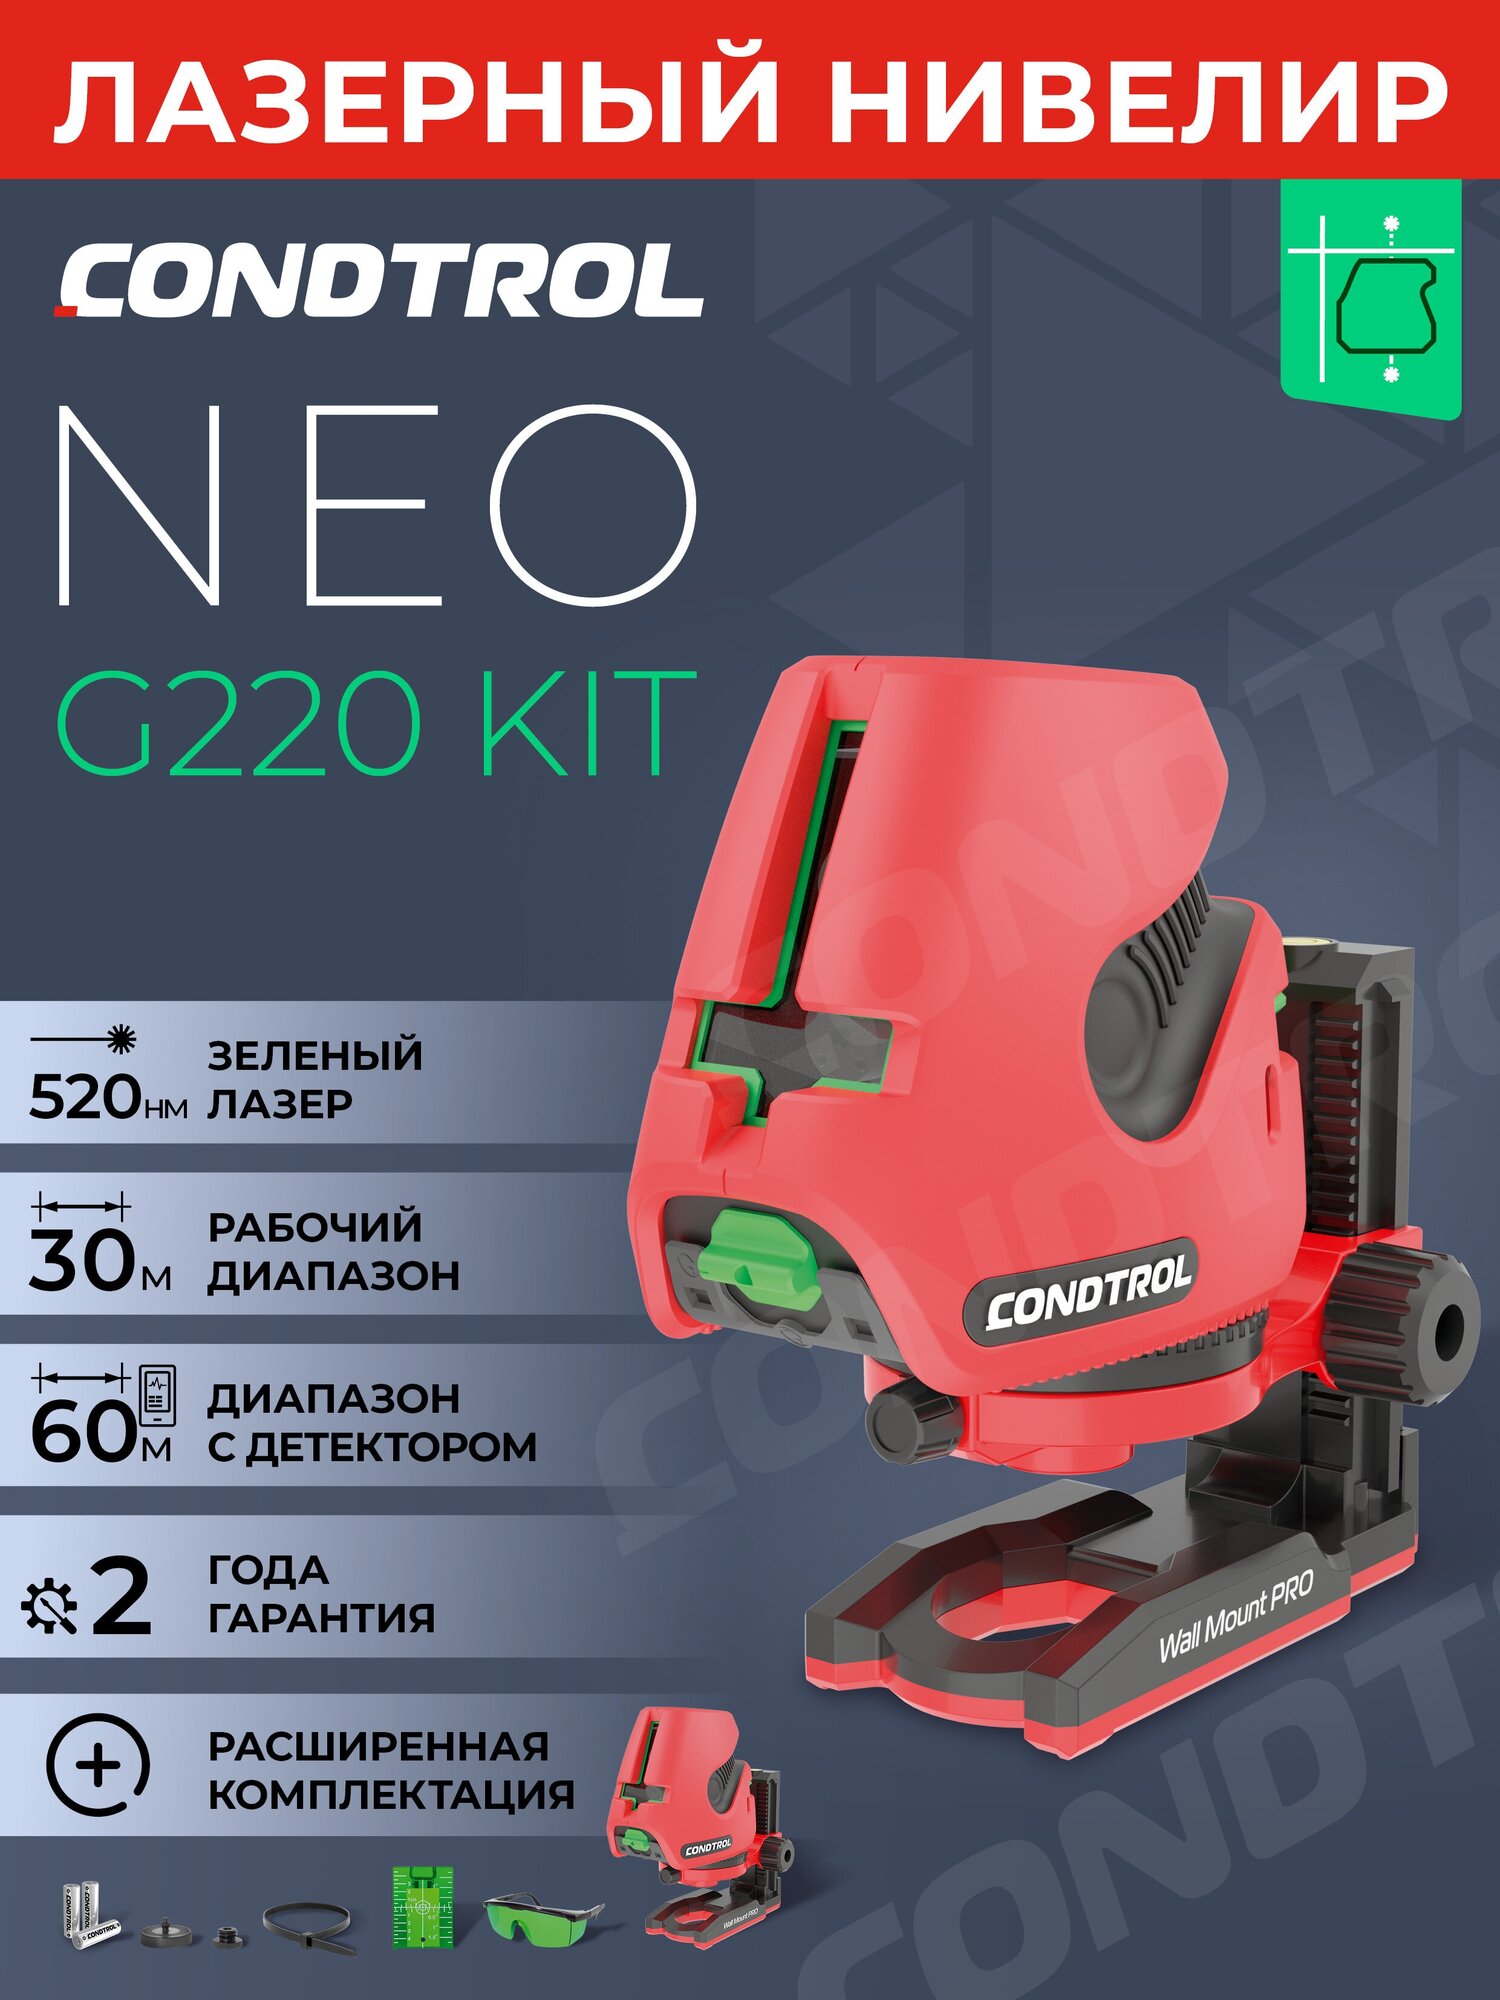 Нивелир лазерный Condtrol Neo G220 Kit (1-2-401) с настенным креплением и очками